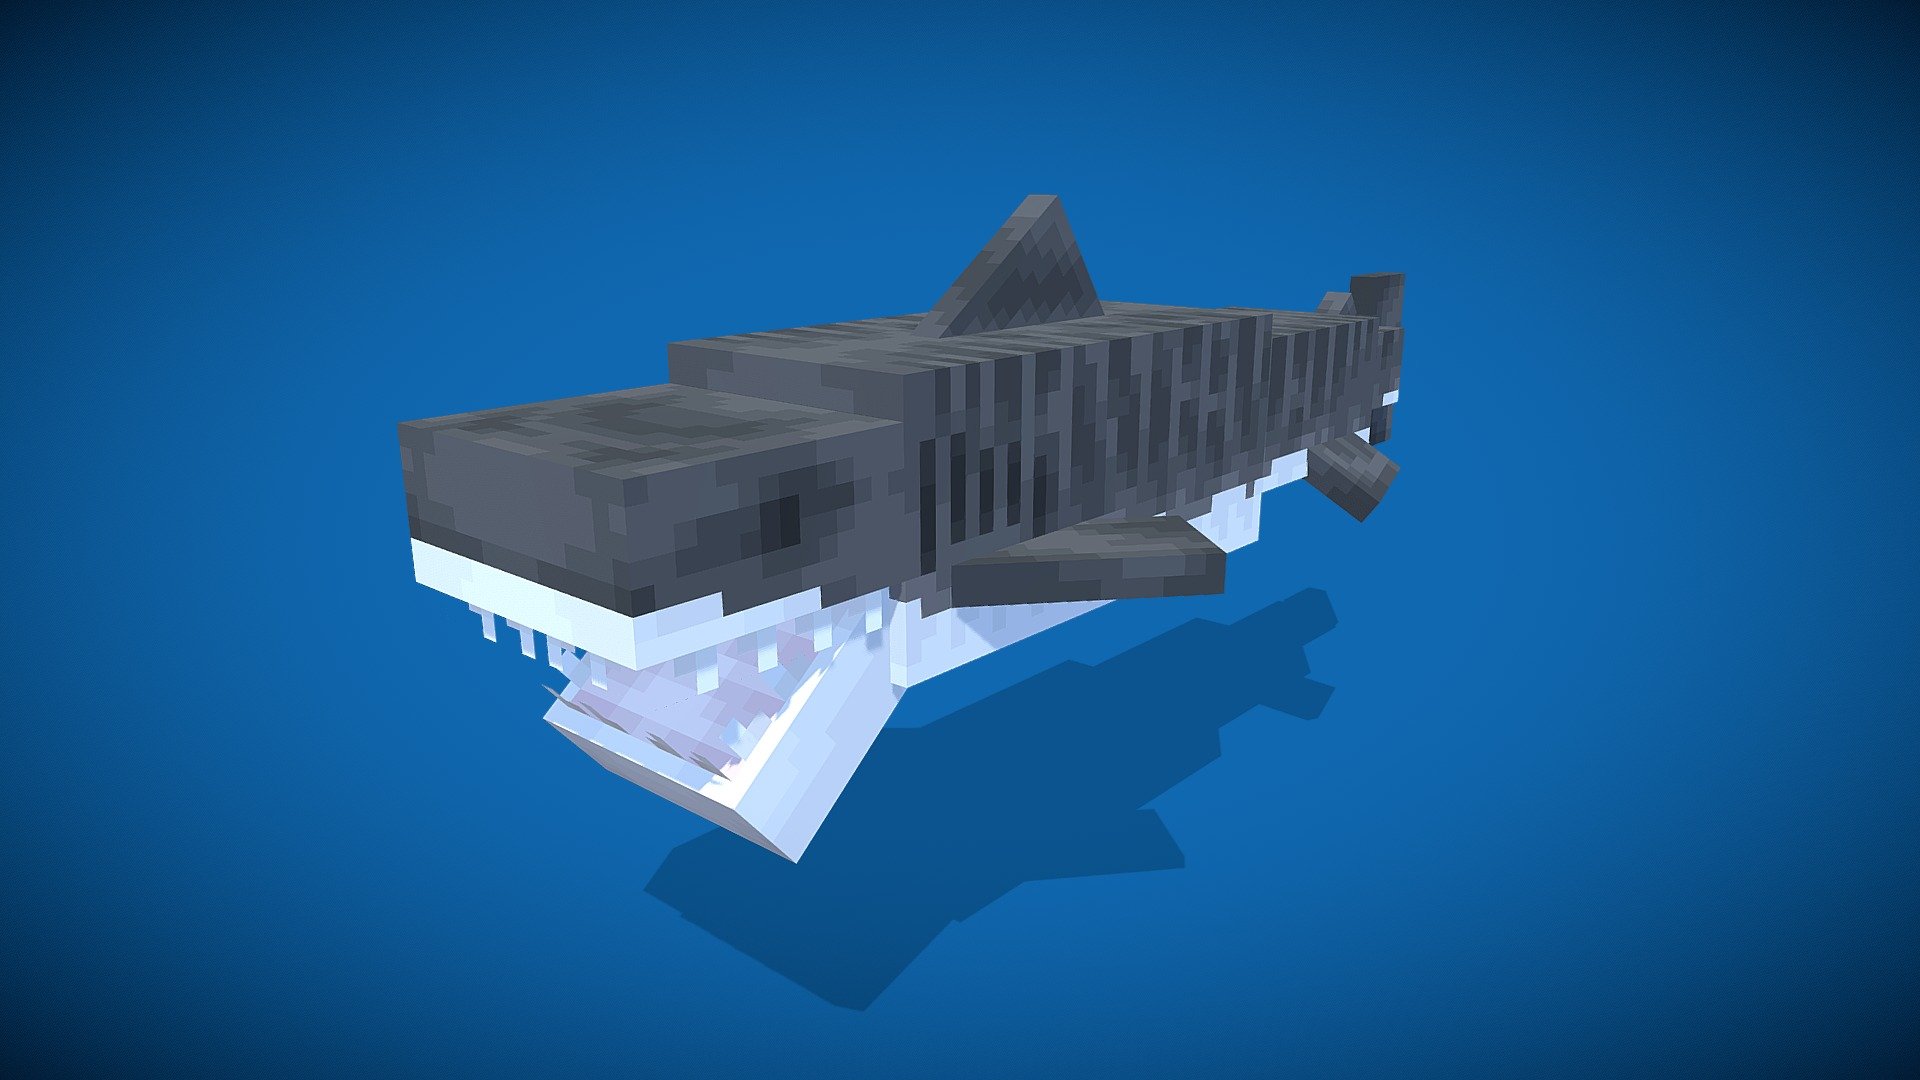 Minecraft Tiger shark - 3D model by Skart2000 [dcbb457] - Sketchfab